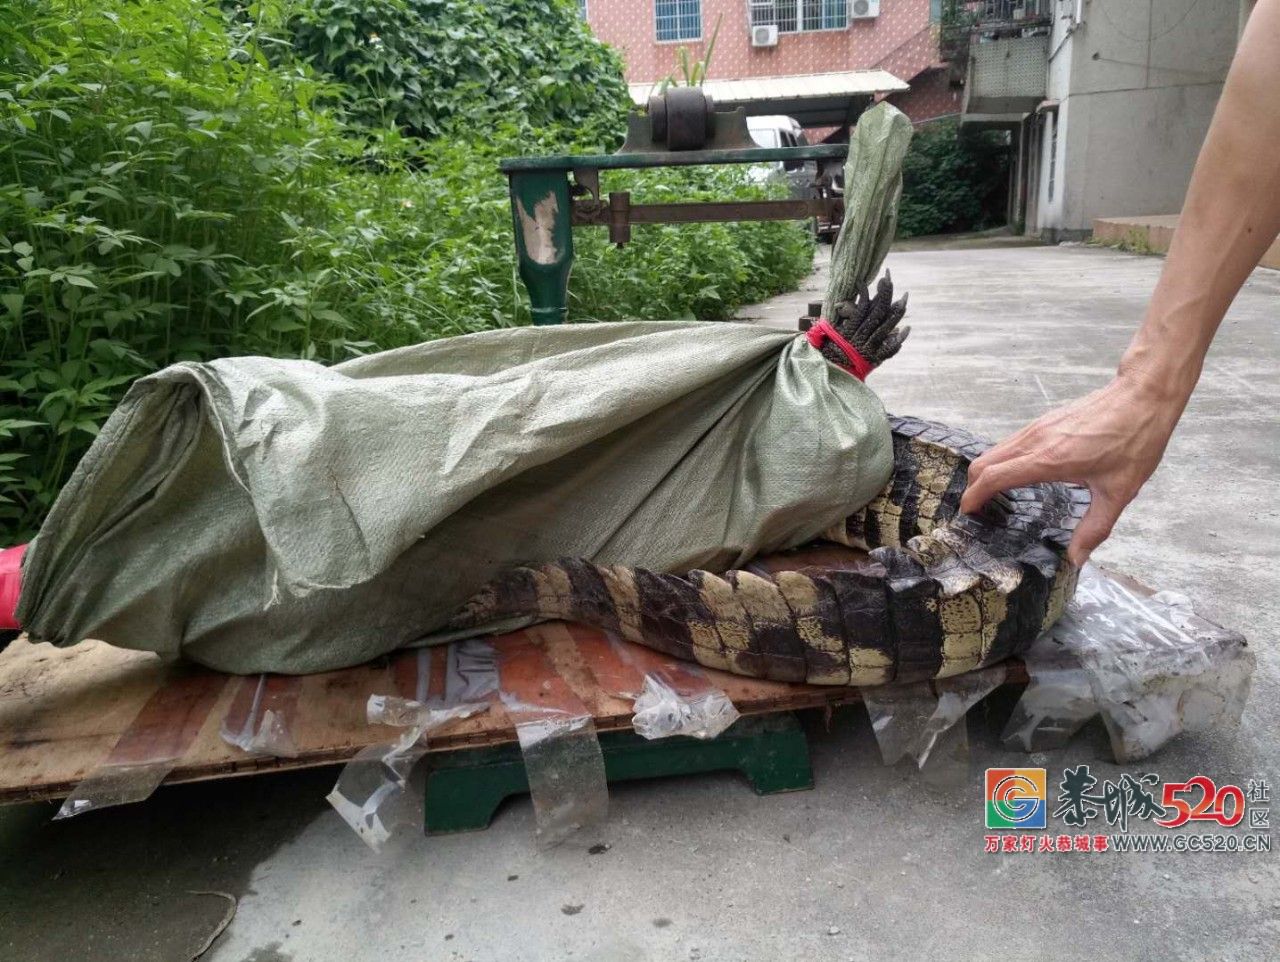 广州流溪河抓到一条2米长的鳄鱼！是真的！不能吃！154 / 作者:狗婆蛇 / 帖子ID:263157